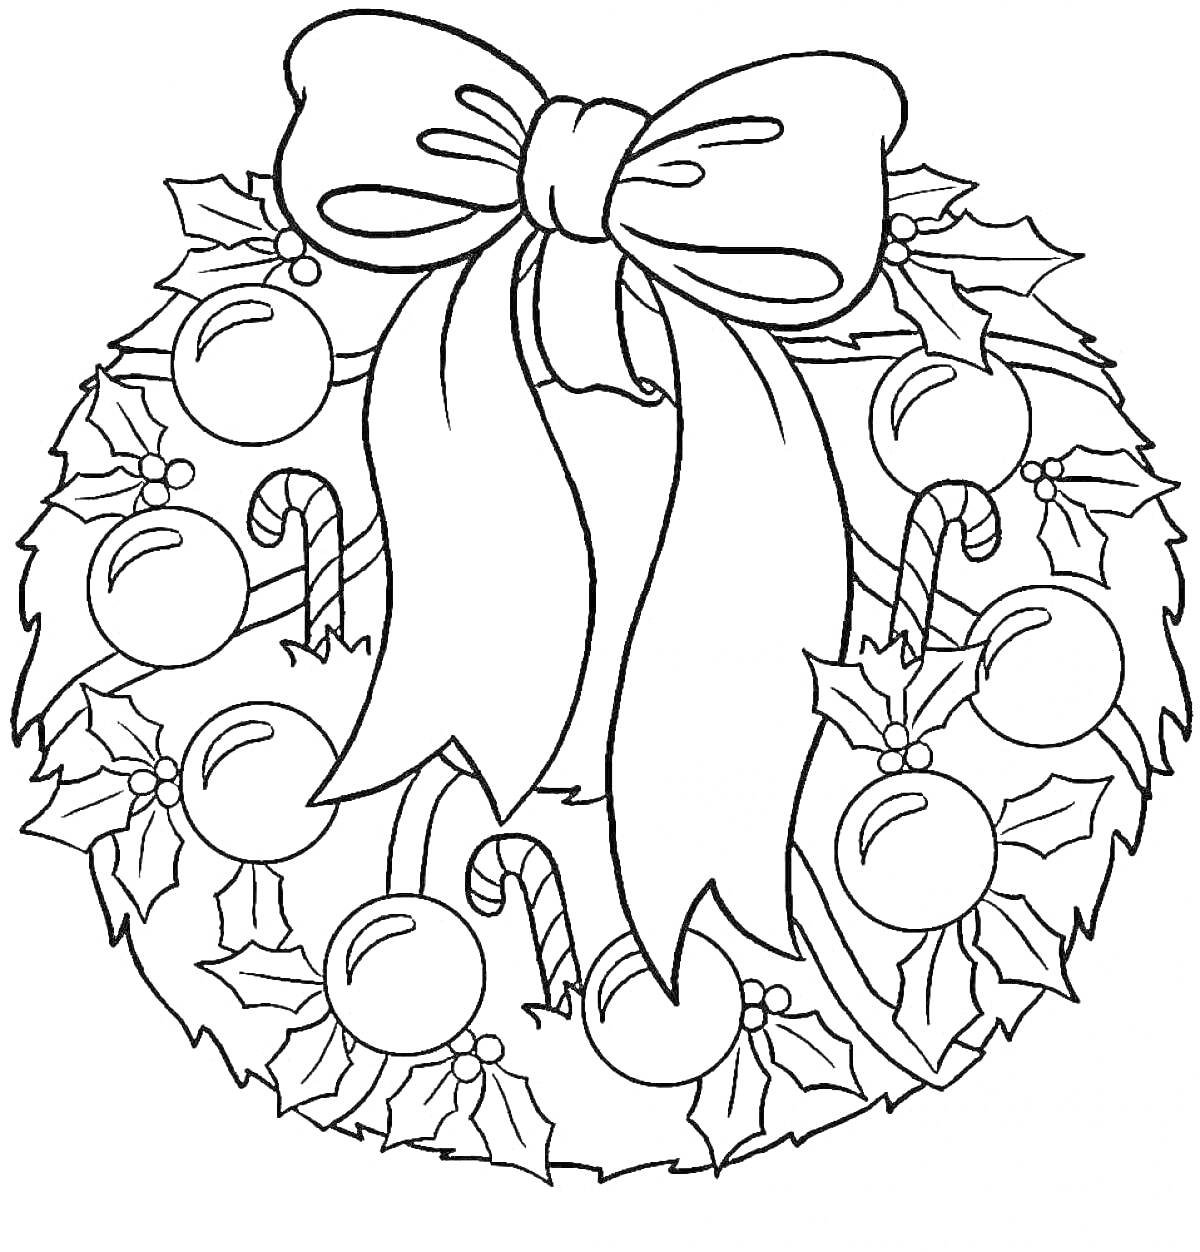 Рождественский венок с бантами, шарами, конфетными тросточками и листьями остролиста.